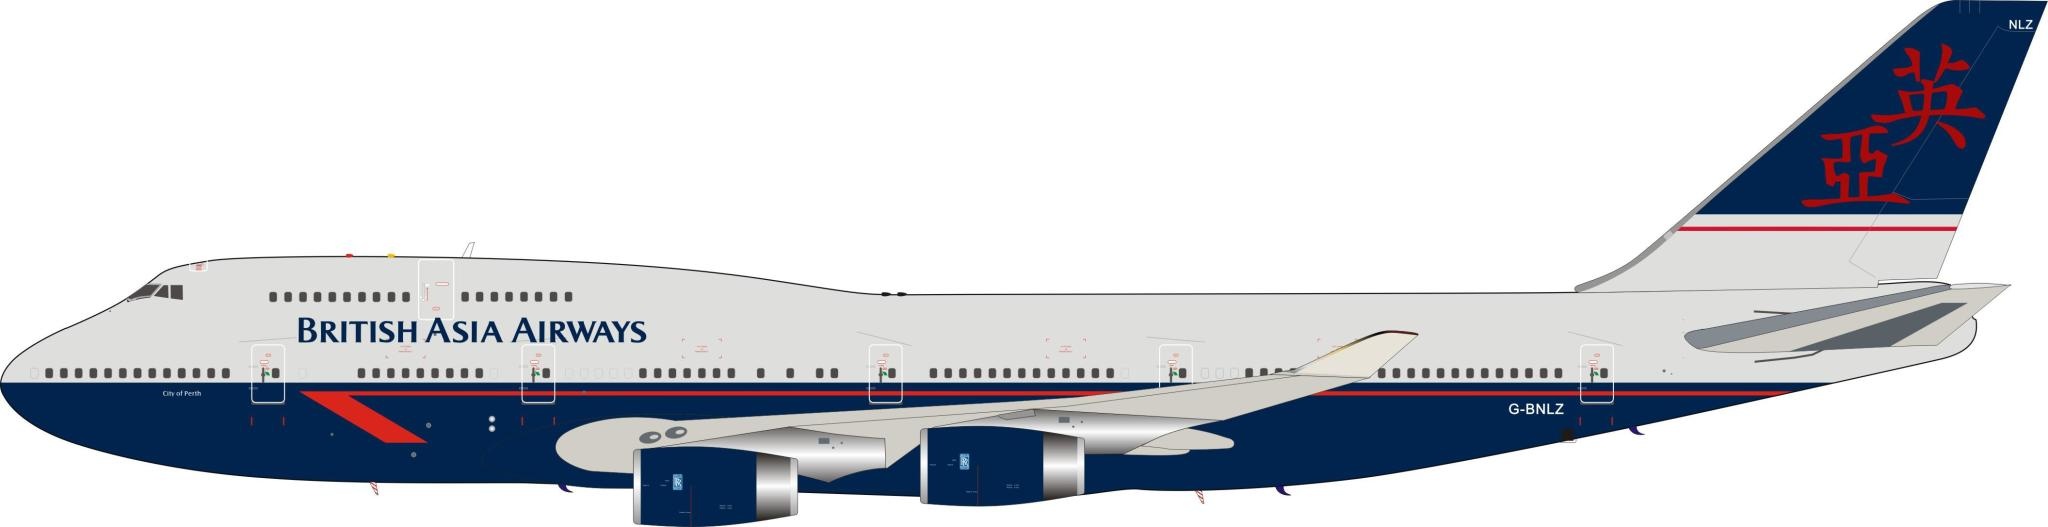 B747-400 British Asia Airways (landor) G-BNLZ 1:200